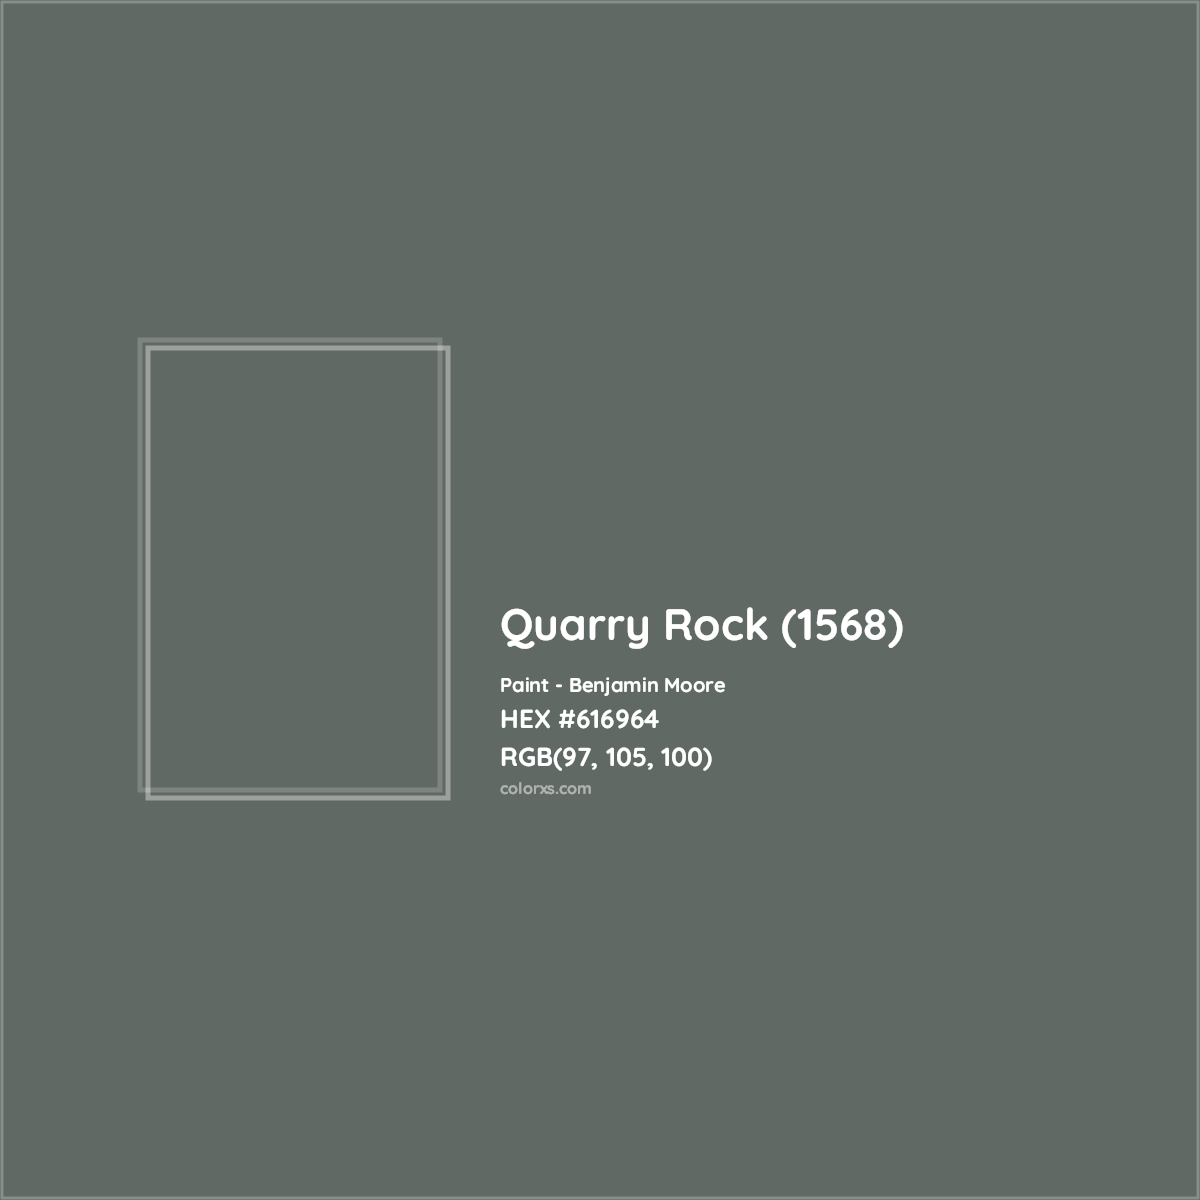 HEX #616964 Quarry Rock (1568) Paint Benjamin Moore - Color Code